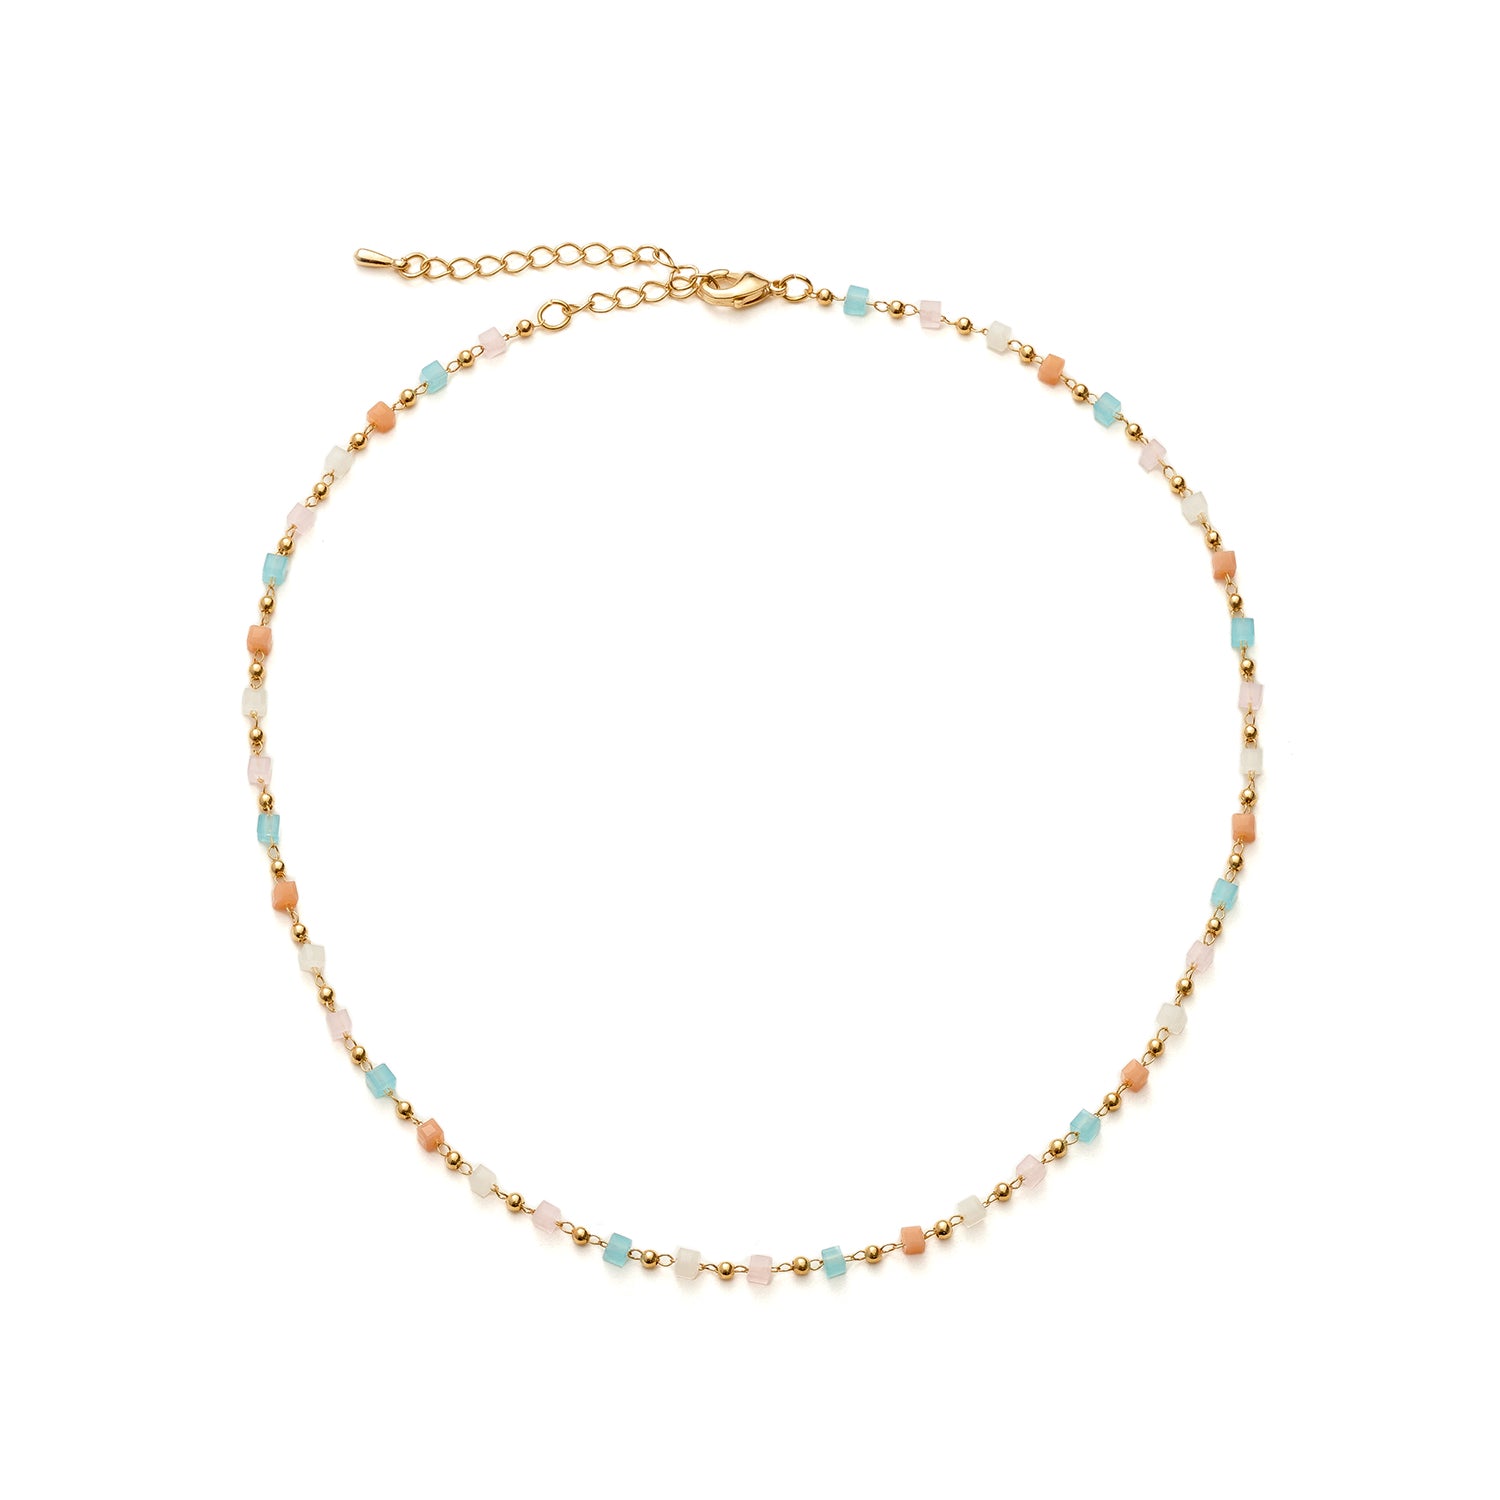 Warm Multi-Colored Stone Necklace